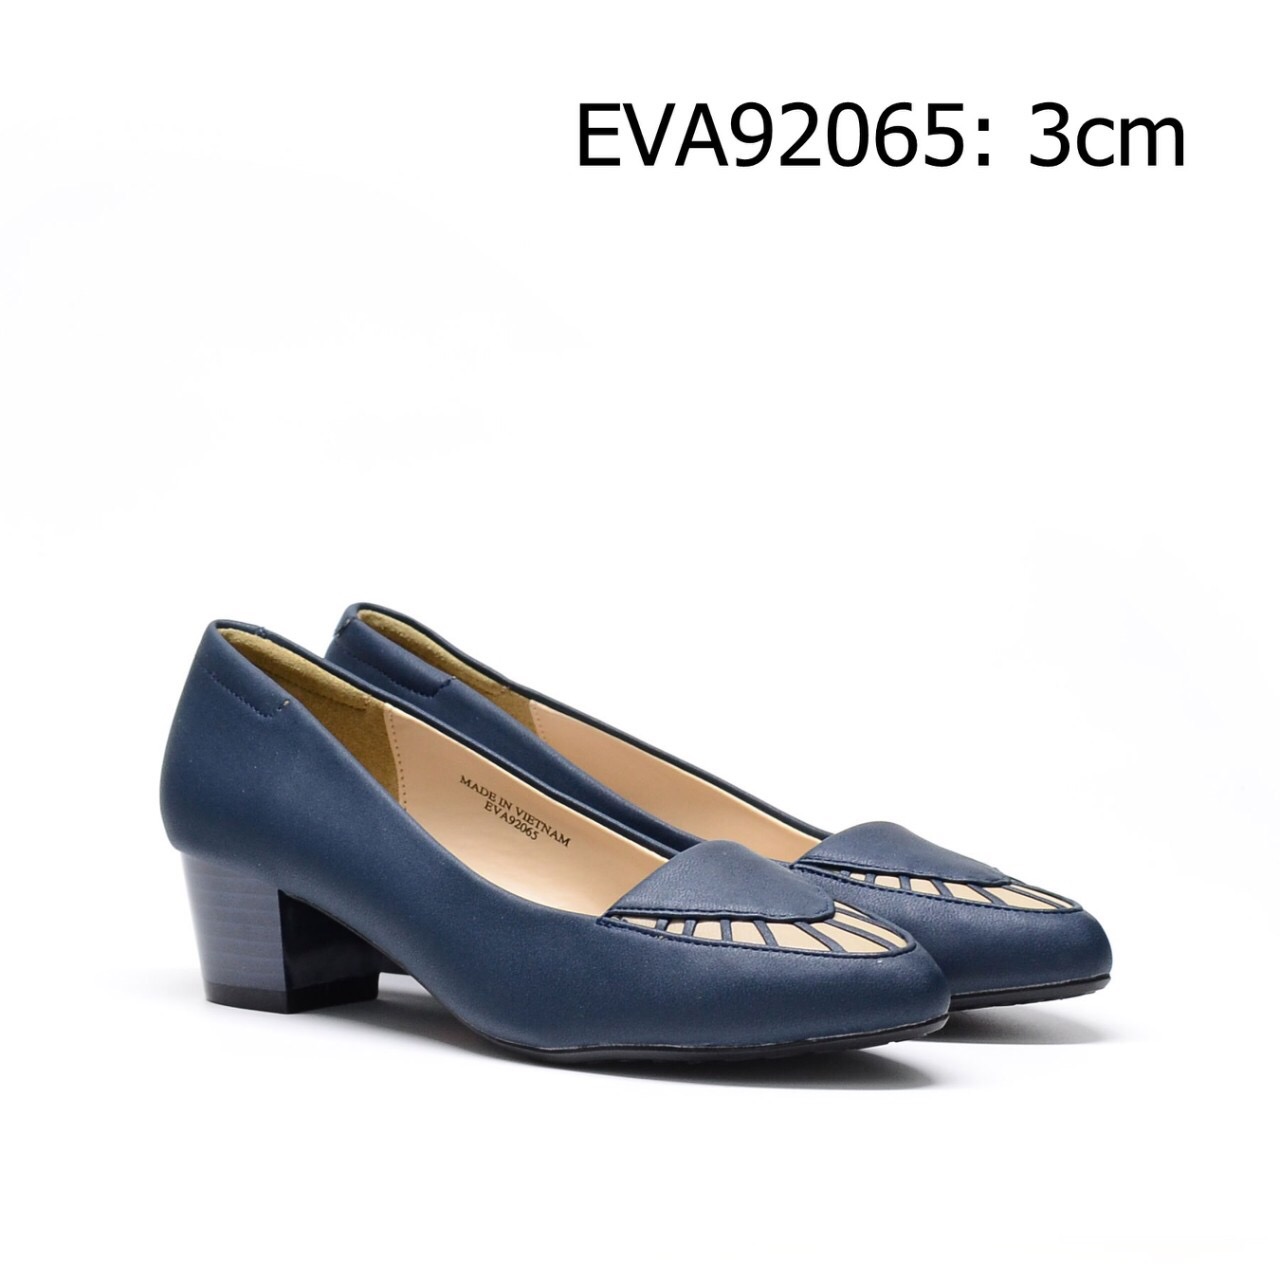 Giày cao gót công sở EVA92065 kiểu dáng trẻ trung phối họa tiết mũi xinh xắn